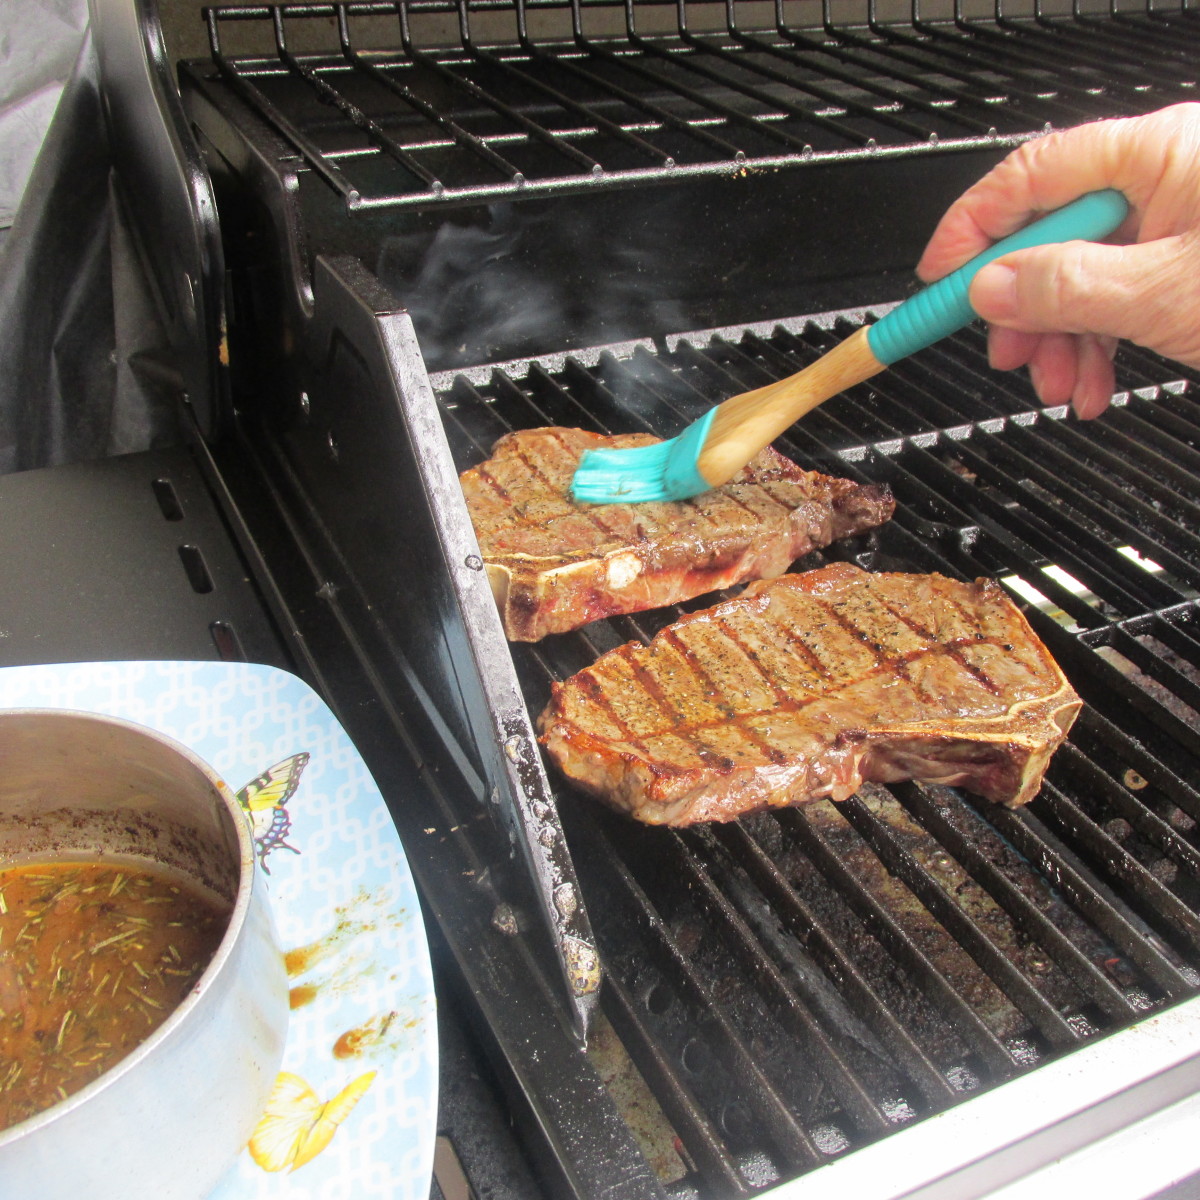 Brushing the homemade steak sauce on the steaks.